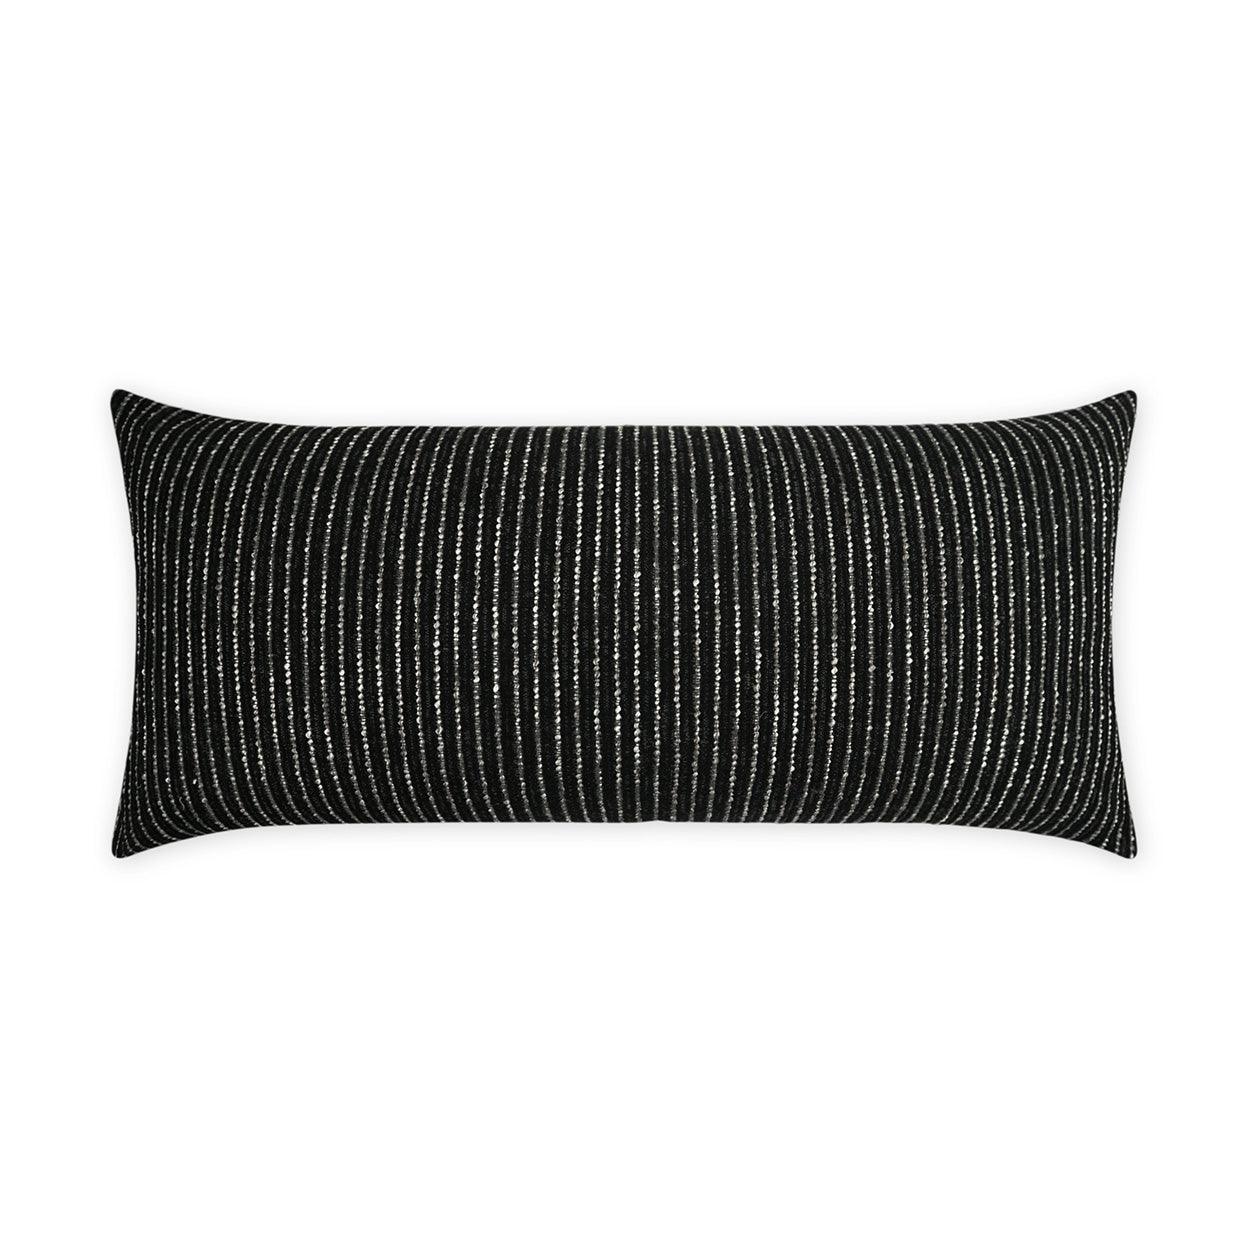 LOOMLAN Outdoor - Outdoor Burson Lumbar Pillow - Onyx - Outdoor Pillows